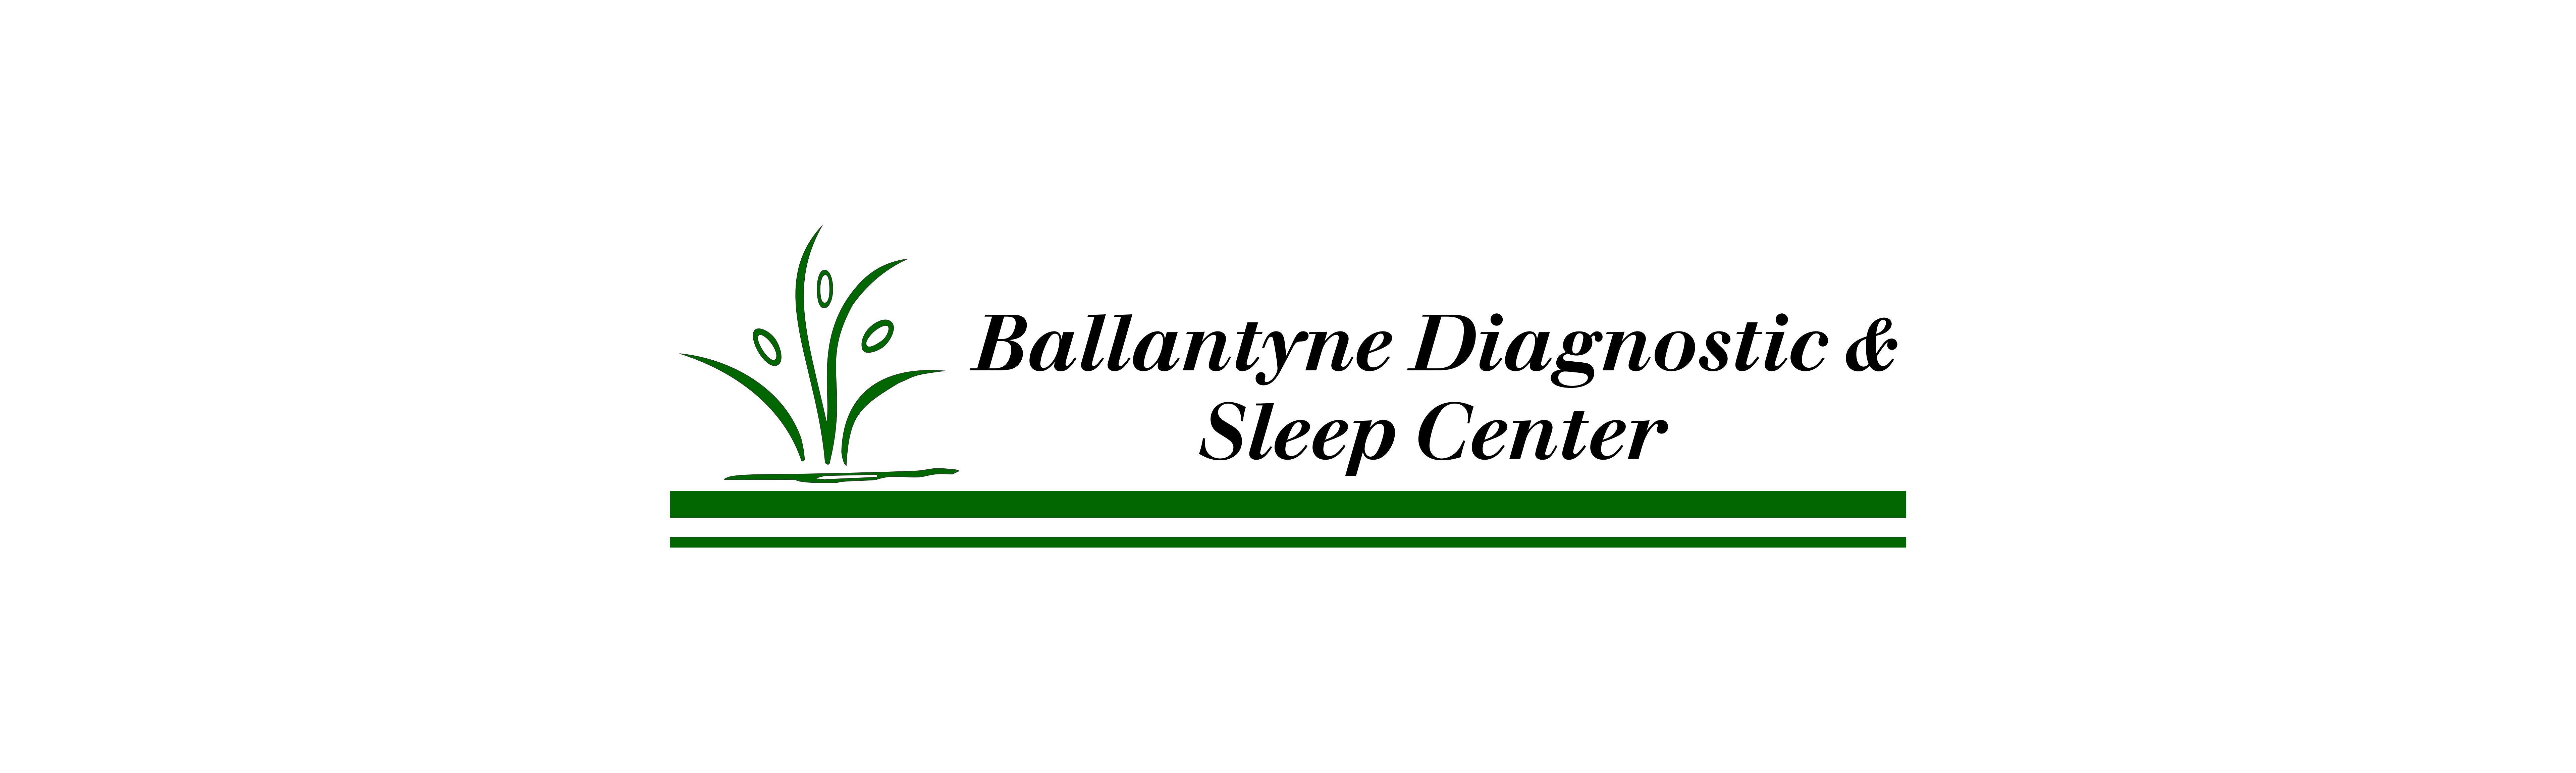 Ballantyne Diagnostic & Sleep Center